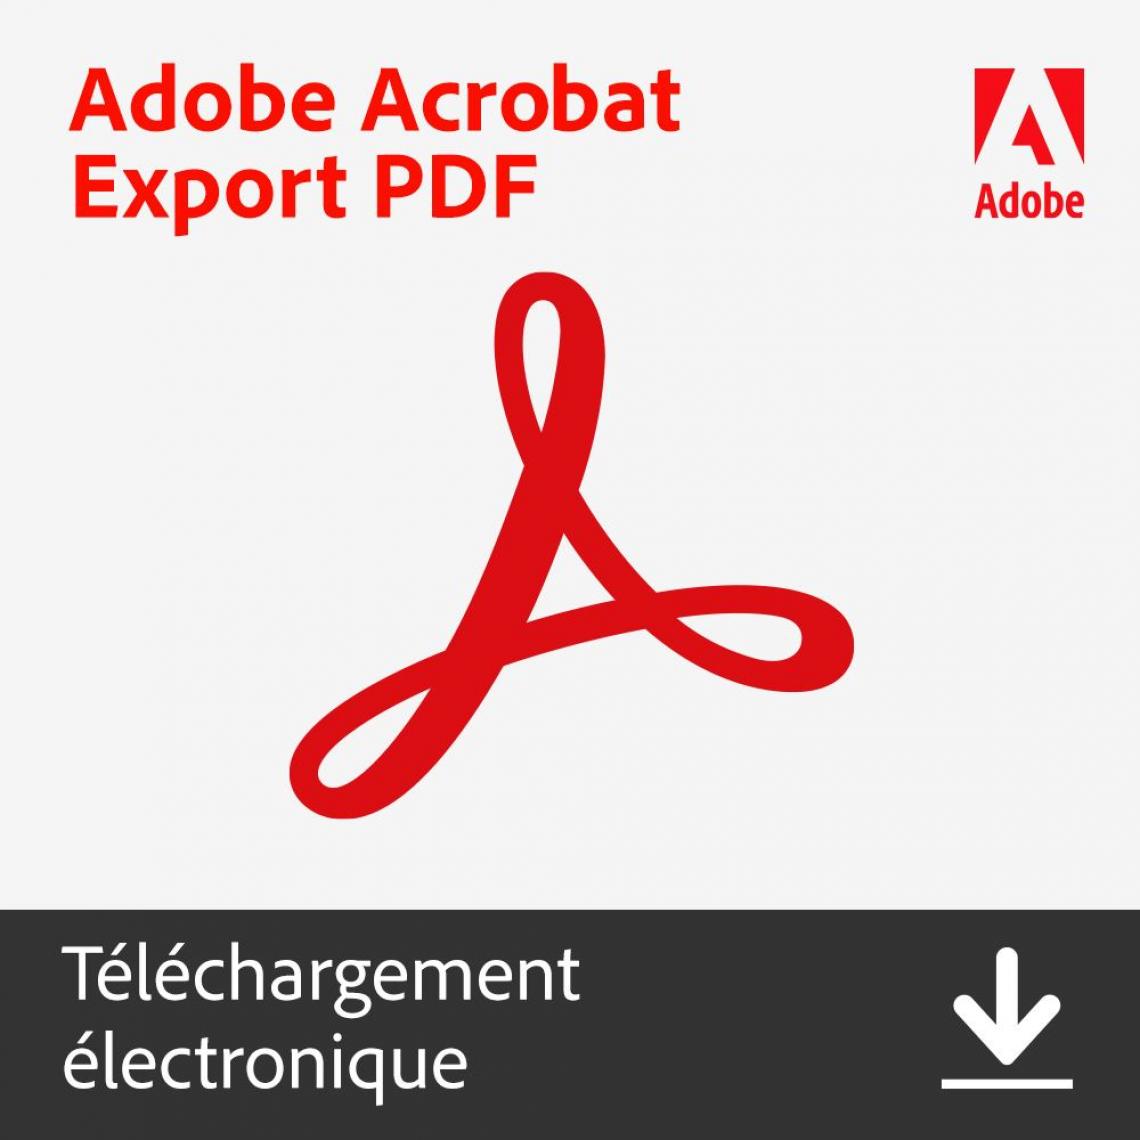 Adobe - Adobe Acrobat Export PDF - Abonnement 1 an - 1 utilisateur - A télécharger - Correcteurs & Traducteurs